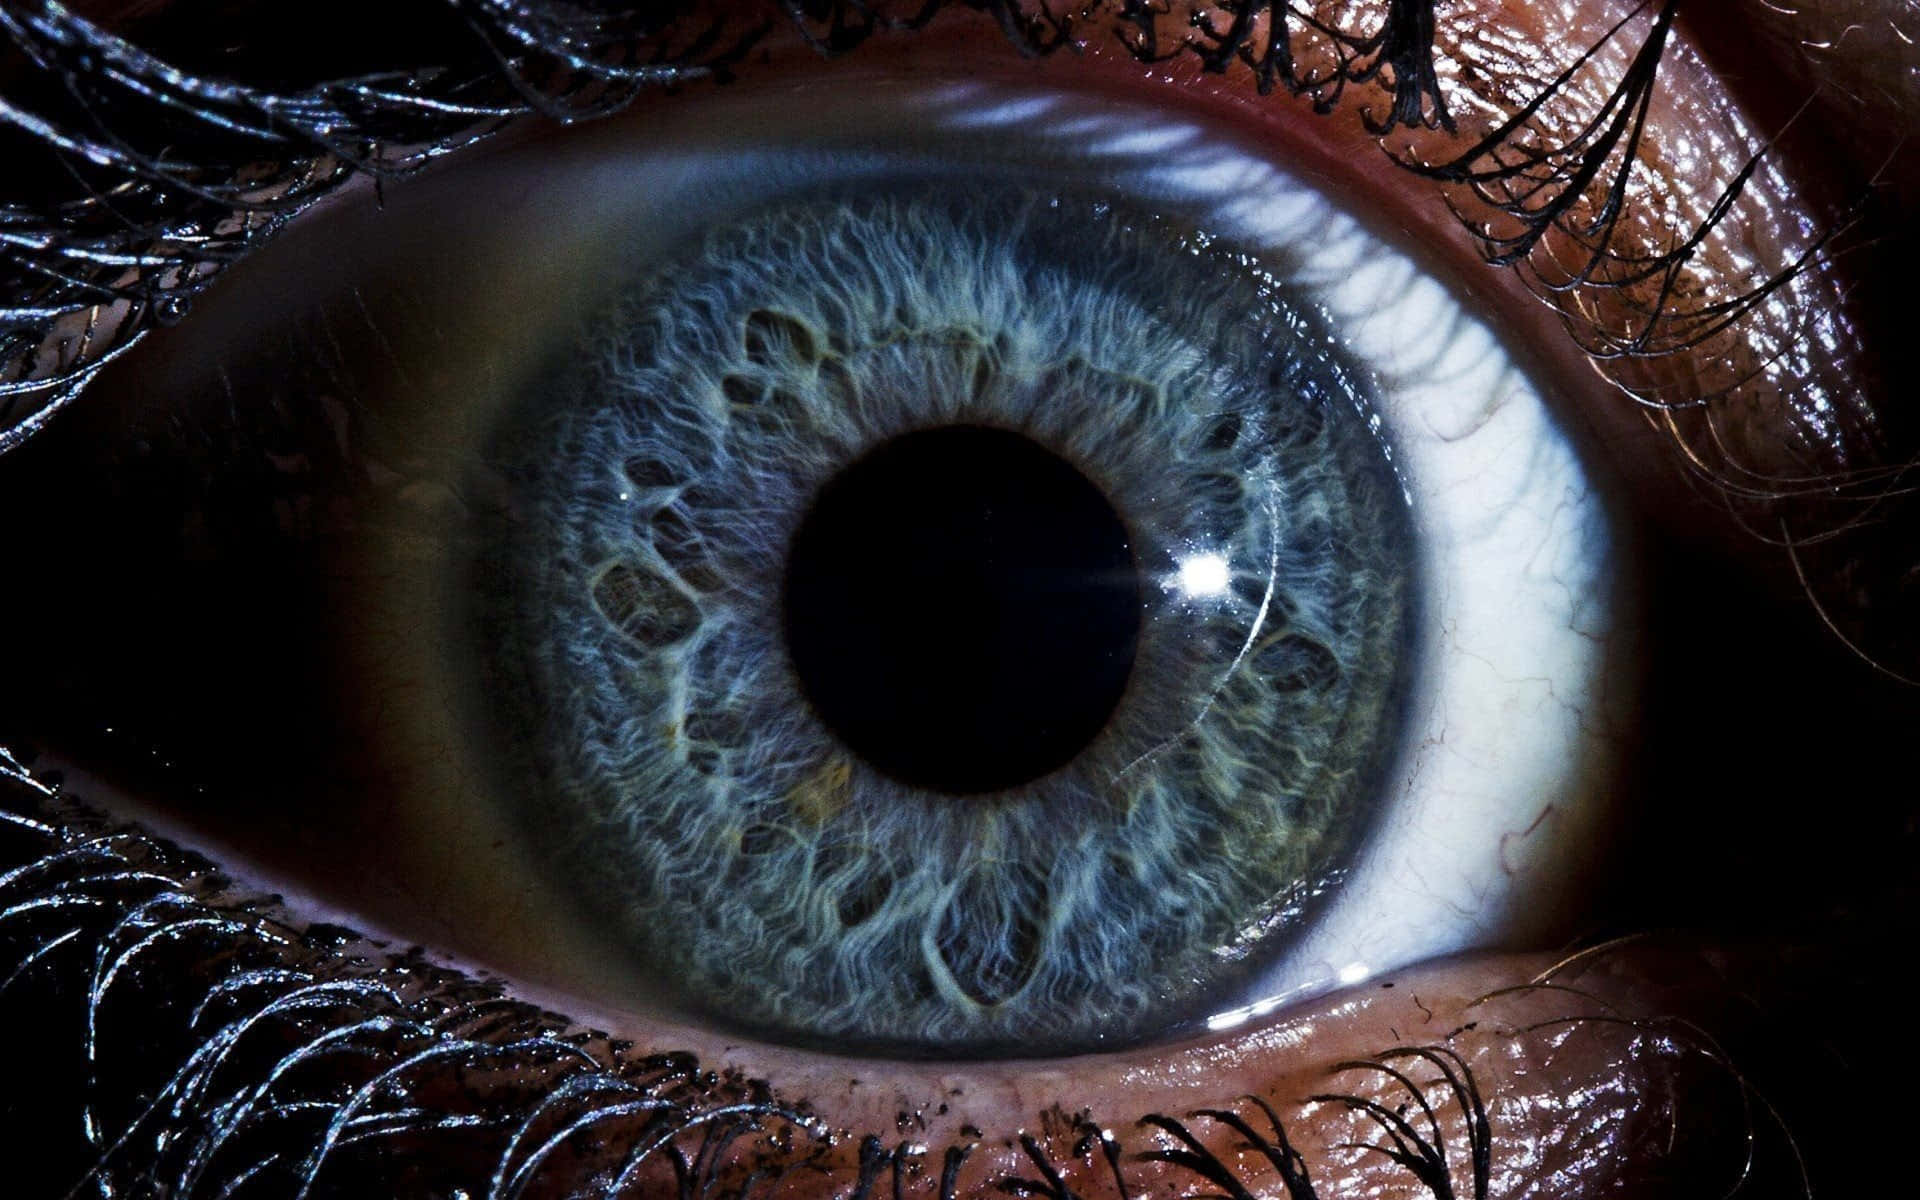 Enchanting Gaze - Hypnotizing Close-Up of Captivating Eyes